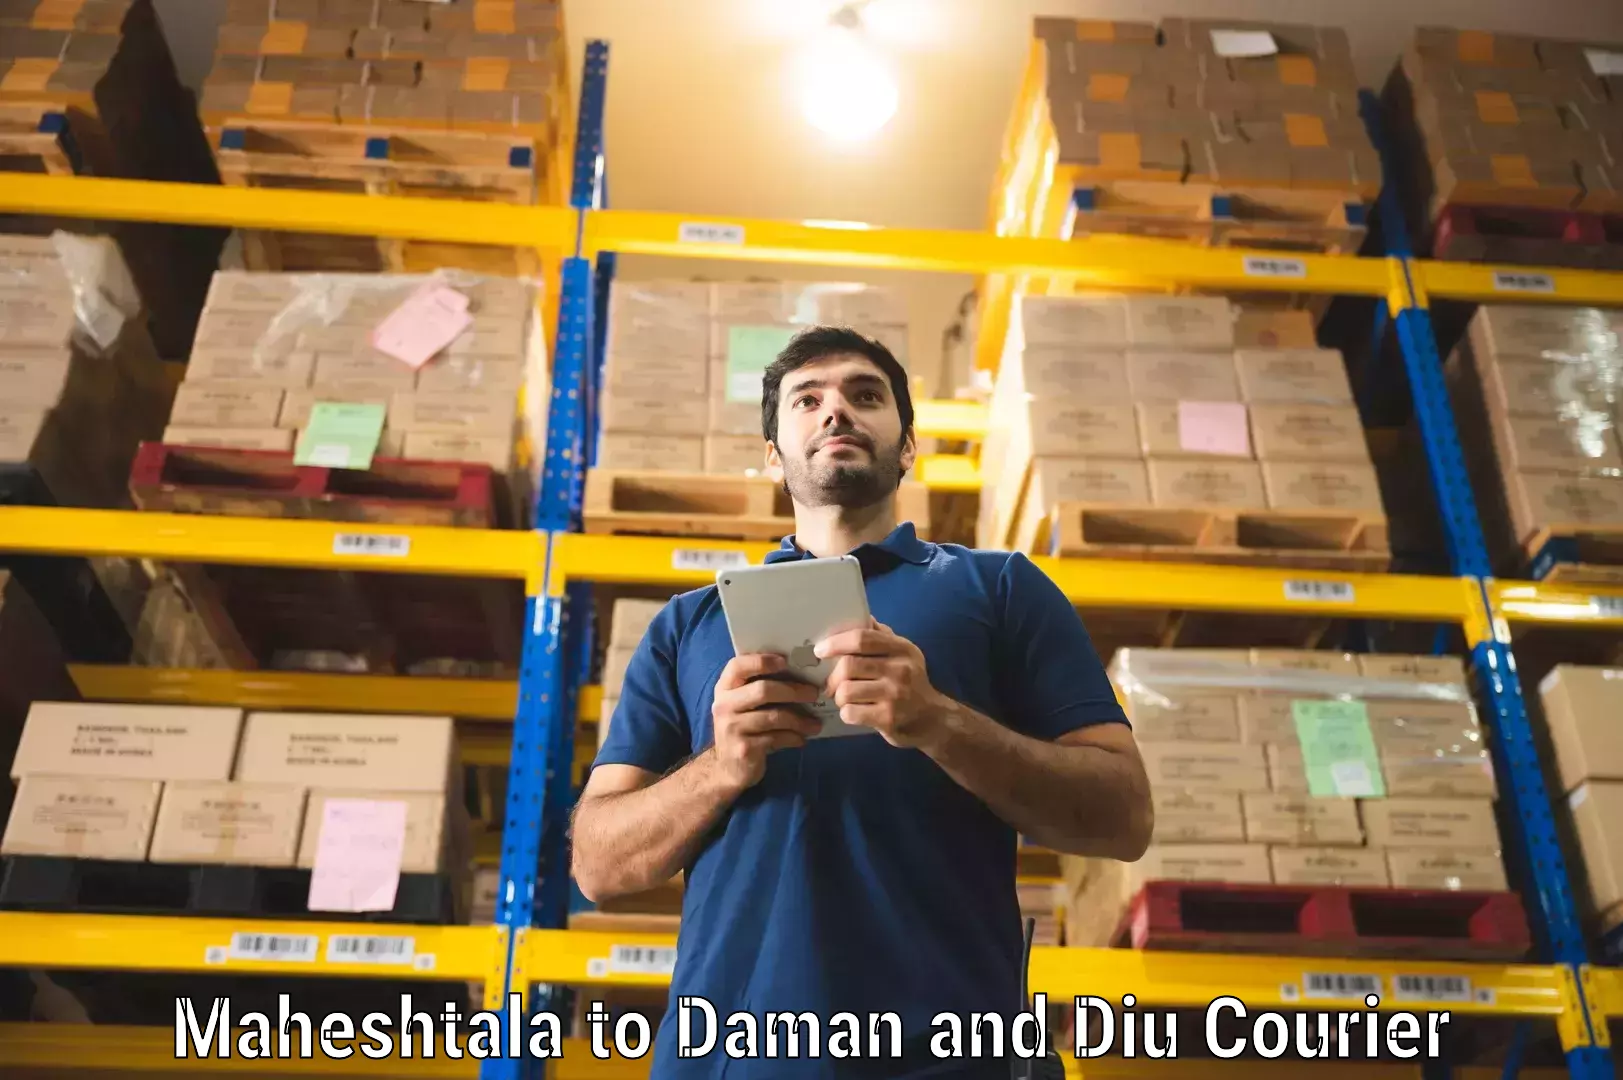 Courier service innovation Maheshtala to Diu